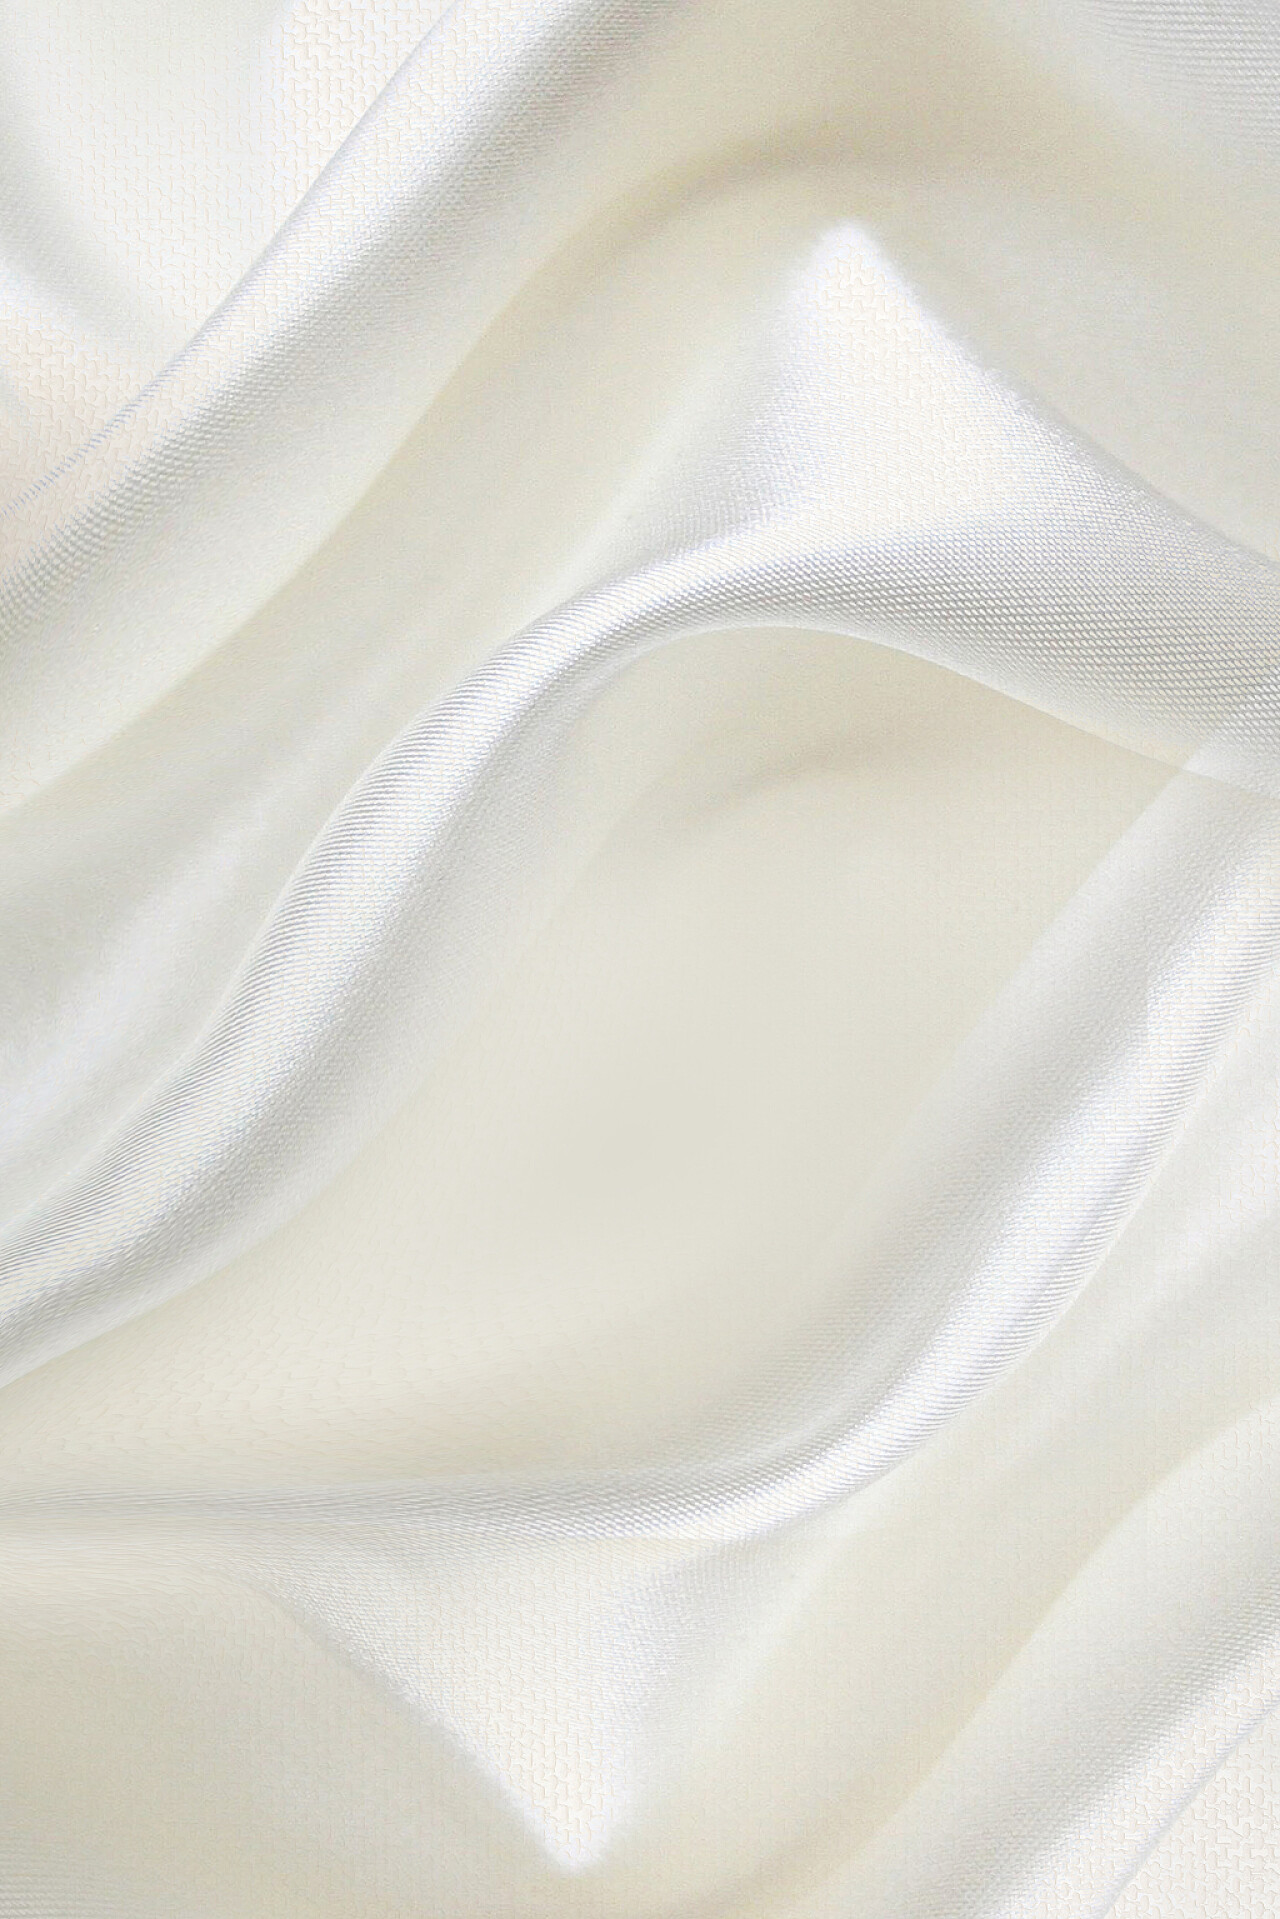 米白色丝绸布料纹理背景